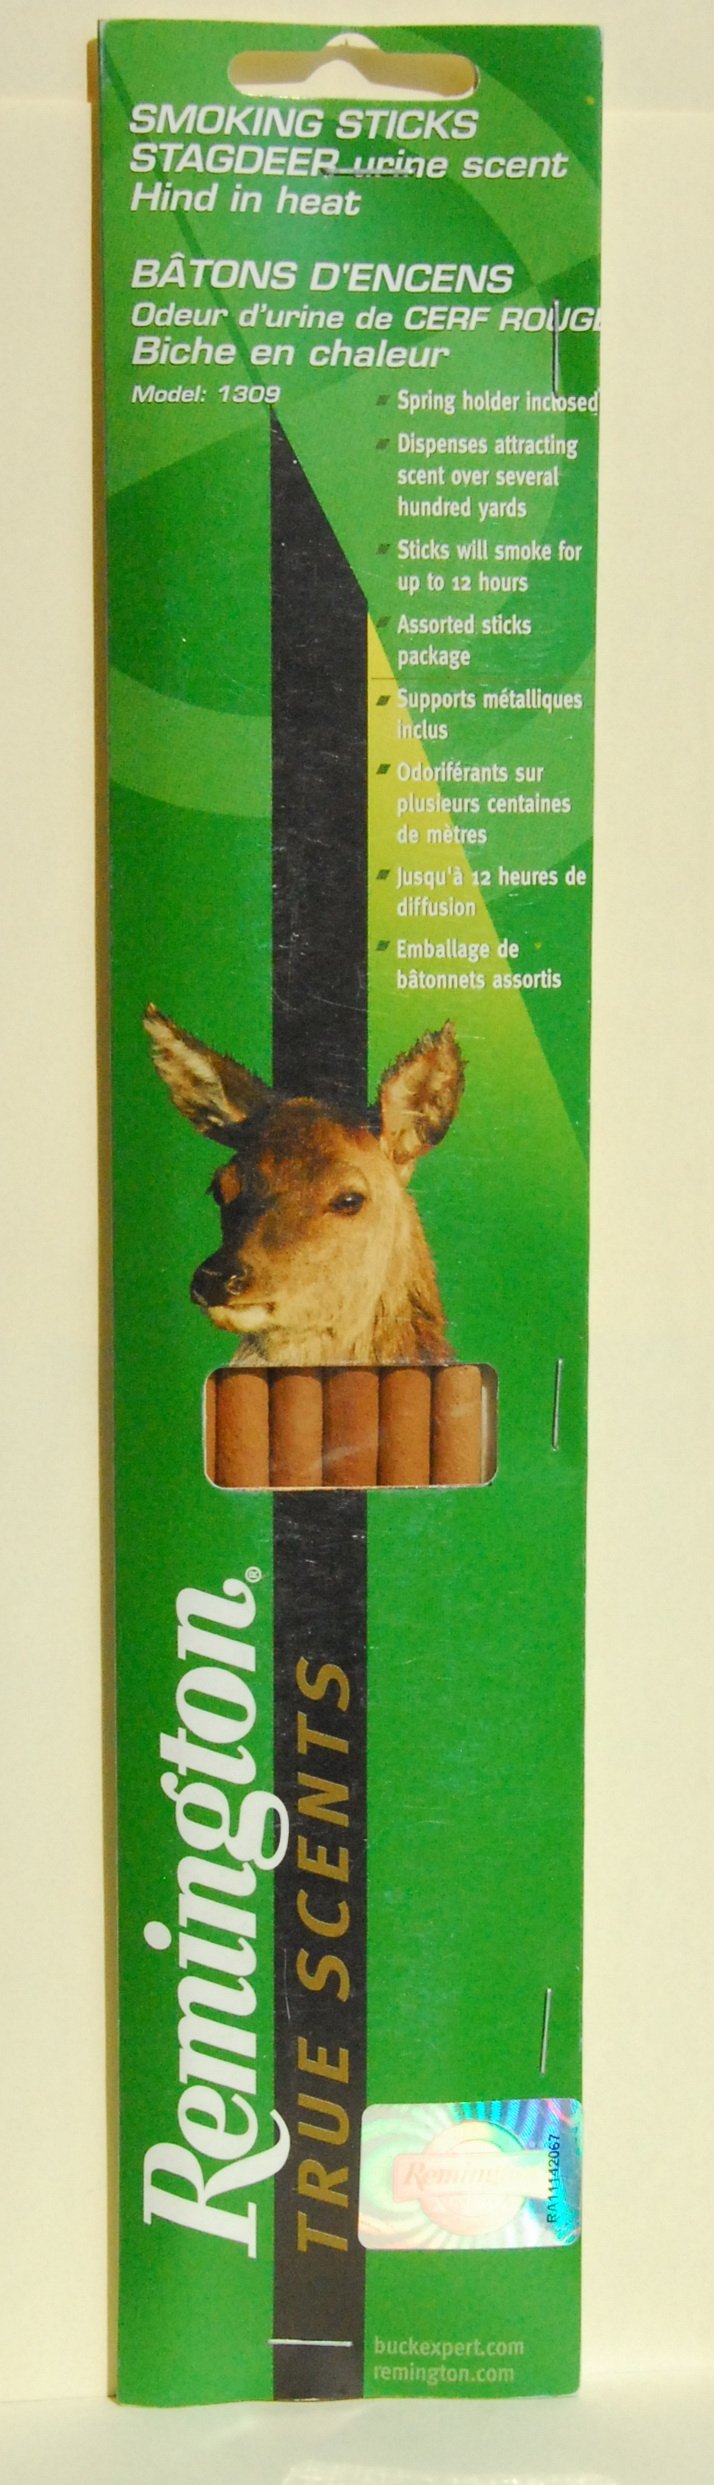 Приманка Remington для оленя - искуственный ароматизатор выделений самки, дымящ. палочки 1309